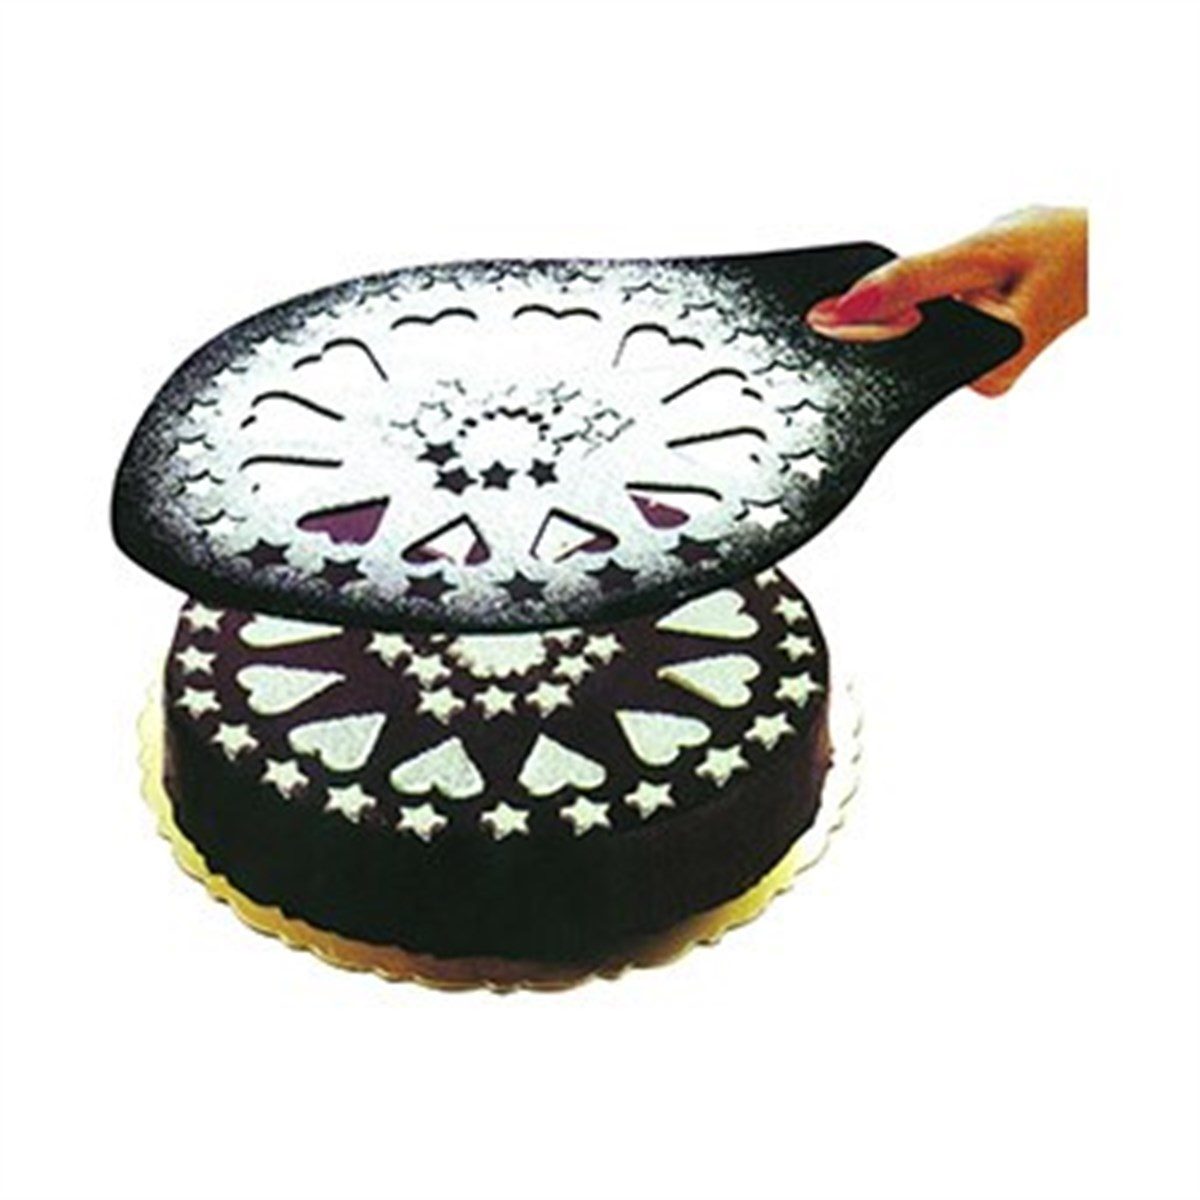 CLZ192 Dekoratif Desenli Pasta Süsleme Şablonu ve Pasta Taşıma Aleti (4172)